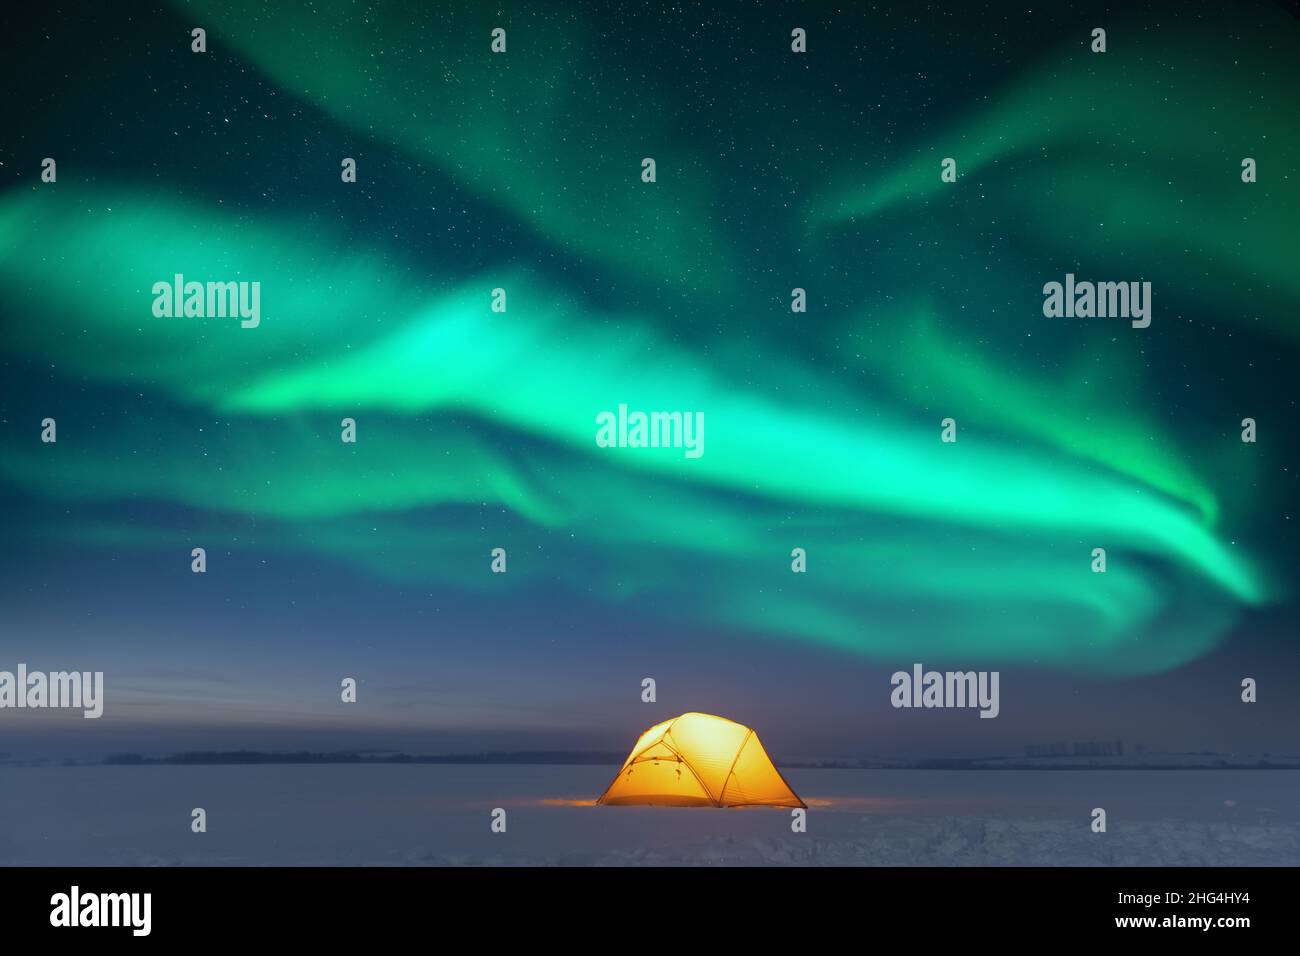 Tenda gialla illuminata dall'interno sullo sfondo di un incredibile cielo stellato con aurora boreale. Panorama notturno incredibile. Aurora boreale in campo invernale Foto Stock